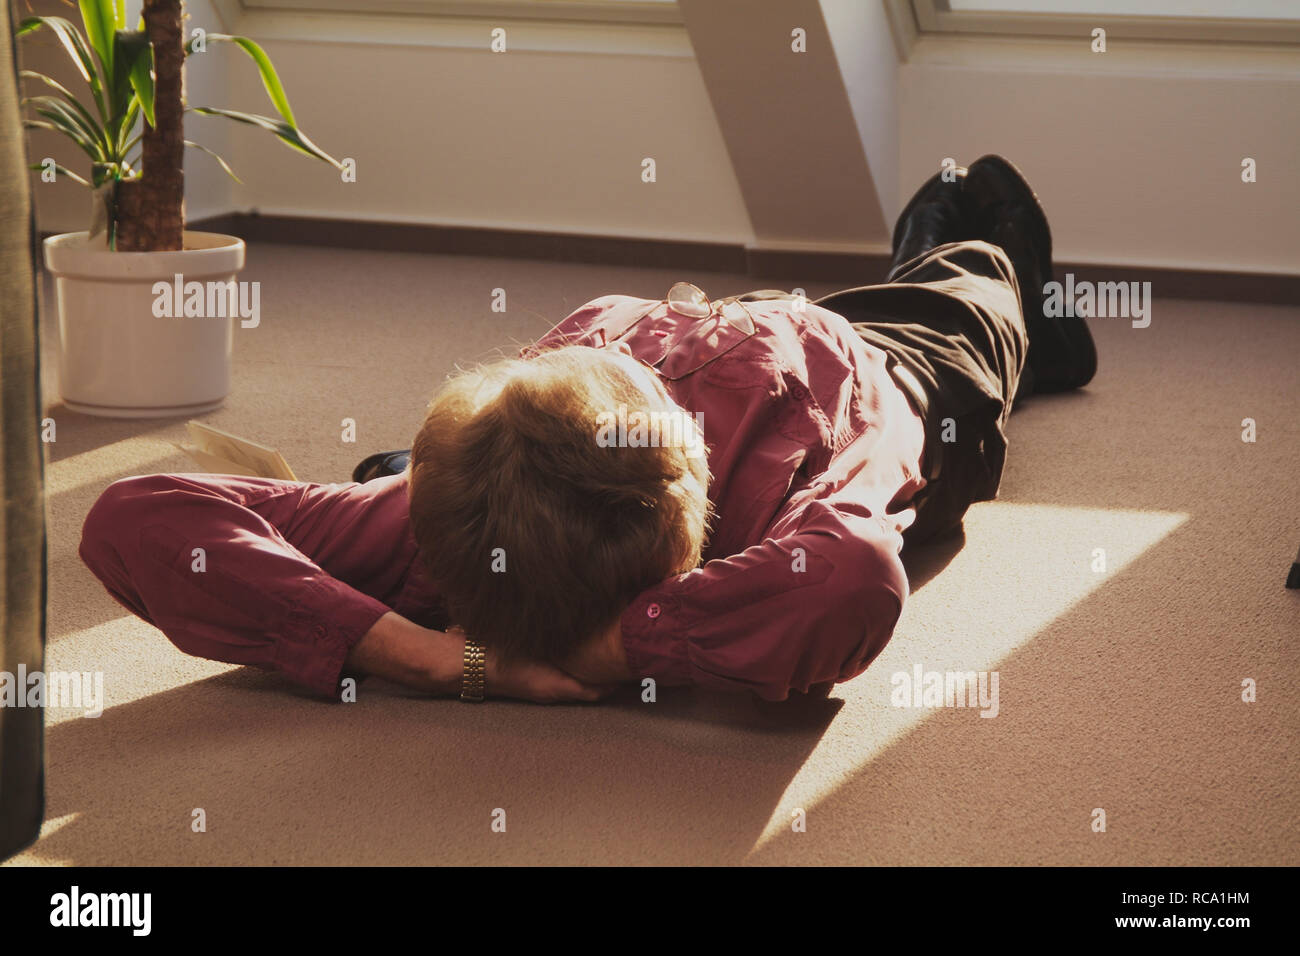 Mann mittleren Alters liegt auf dem Boden und entspannt | middleaged man is relaxing on the floor Stock Photo